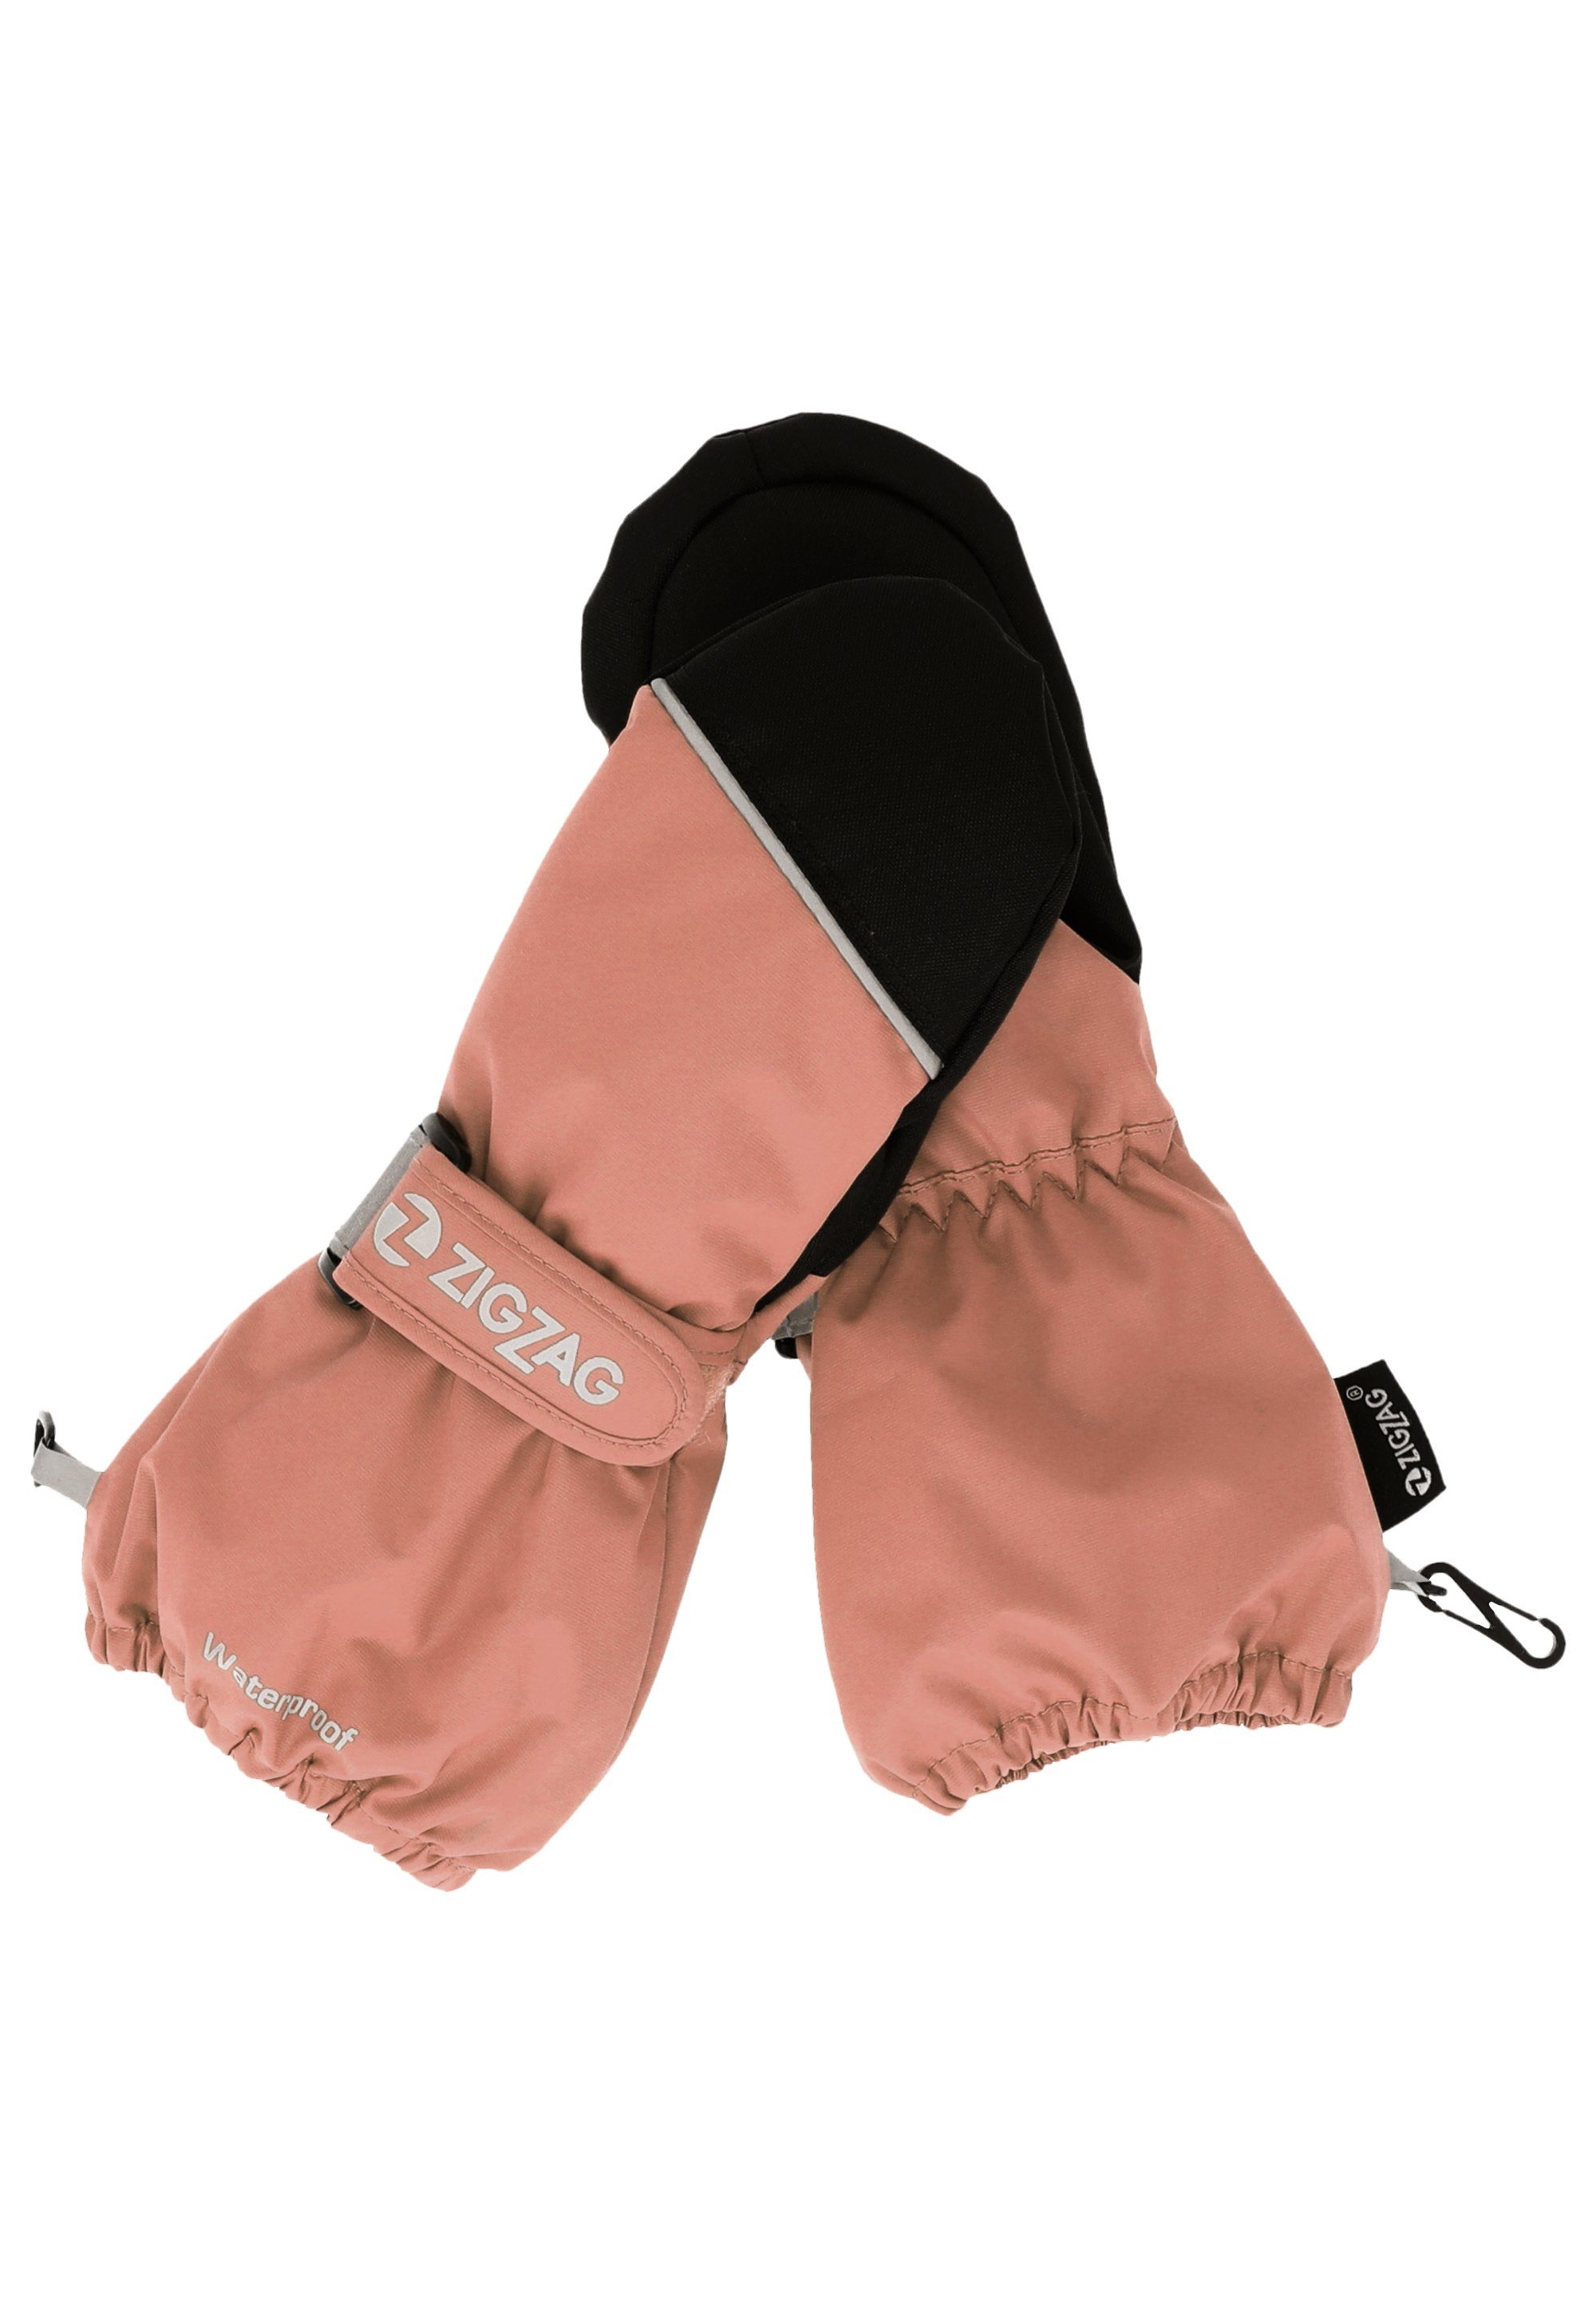 ZIGZAG Wintersport-Ausstattung komfortabler mit Skihandschuhe Kempston rosa